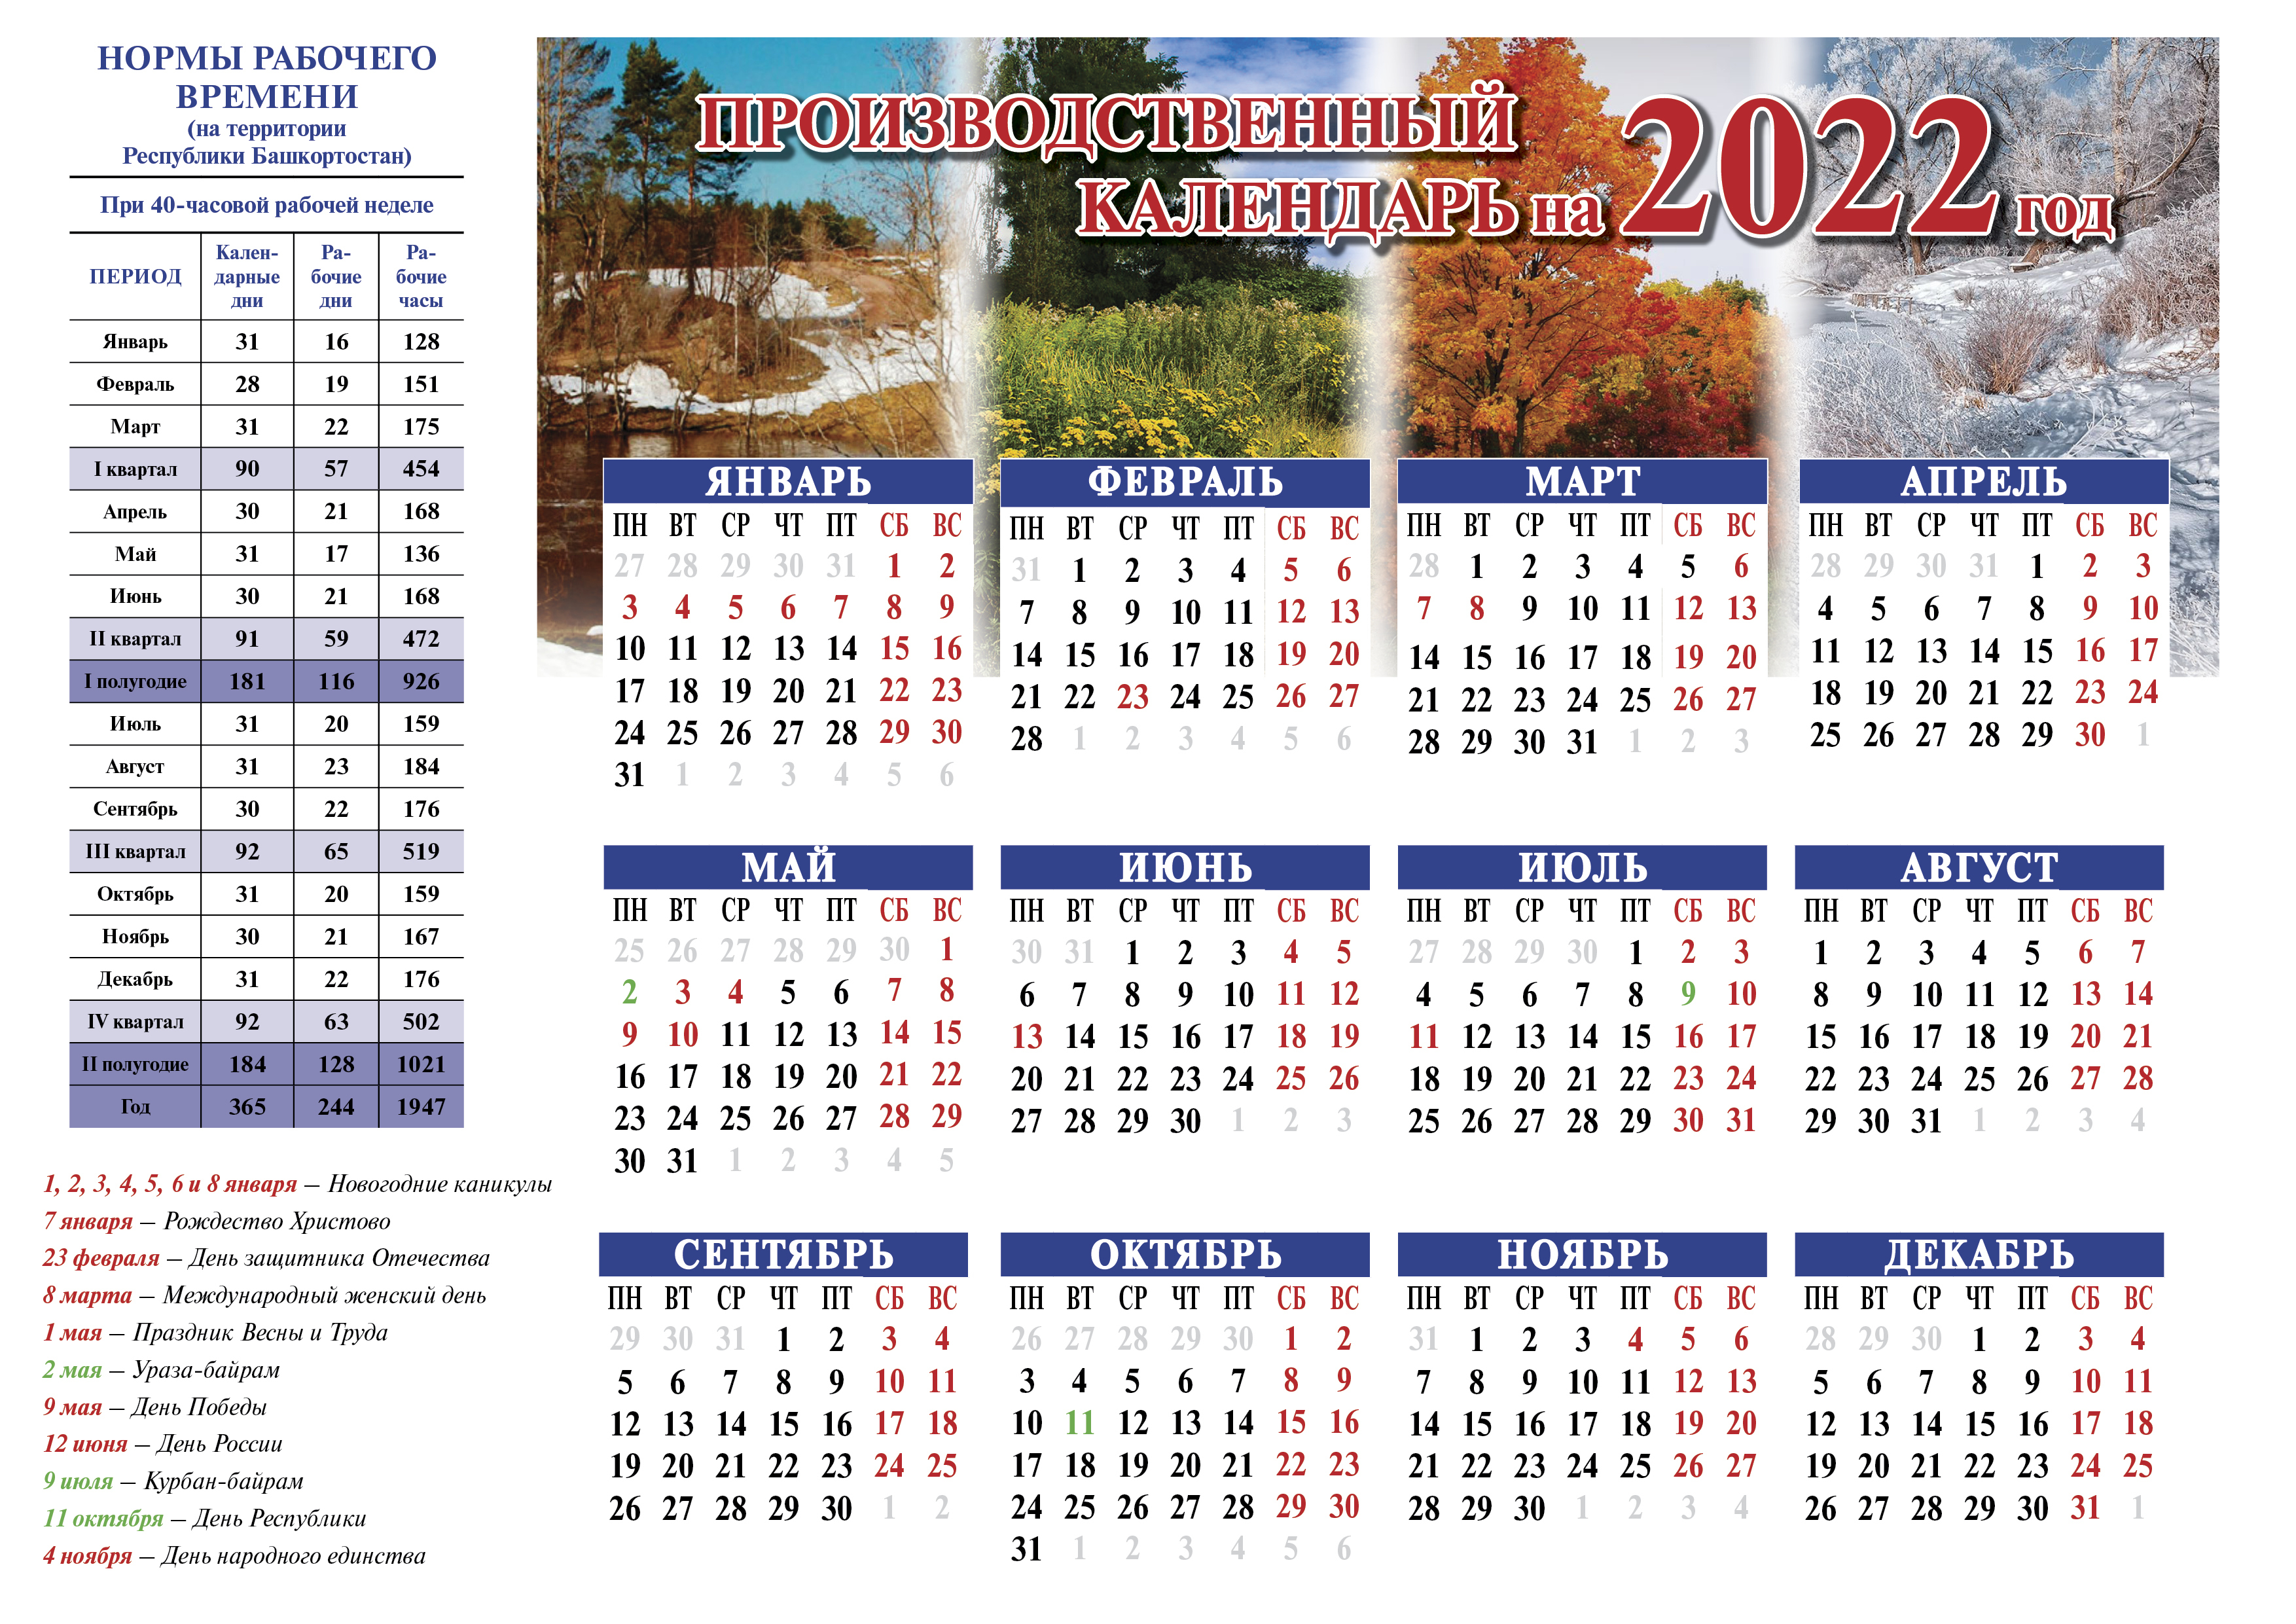 Праздники в июне 2024 в башкирии. Праздничные дни в октябре 2022 в Башкирии. Отдыхаем в мае 2022. Выходные дни в 2022 году в Башкирии. Выходные в мае 2022.